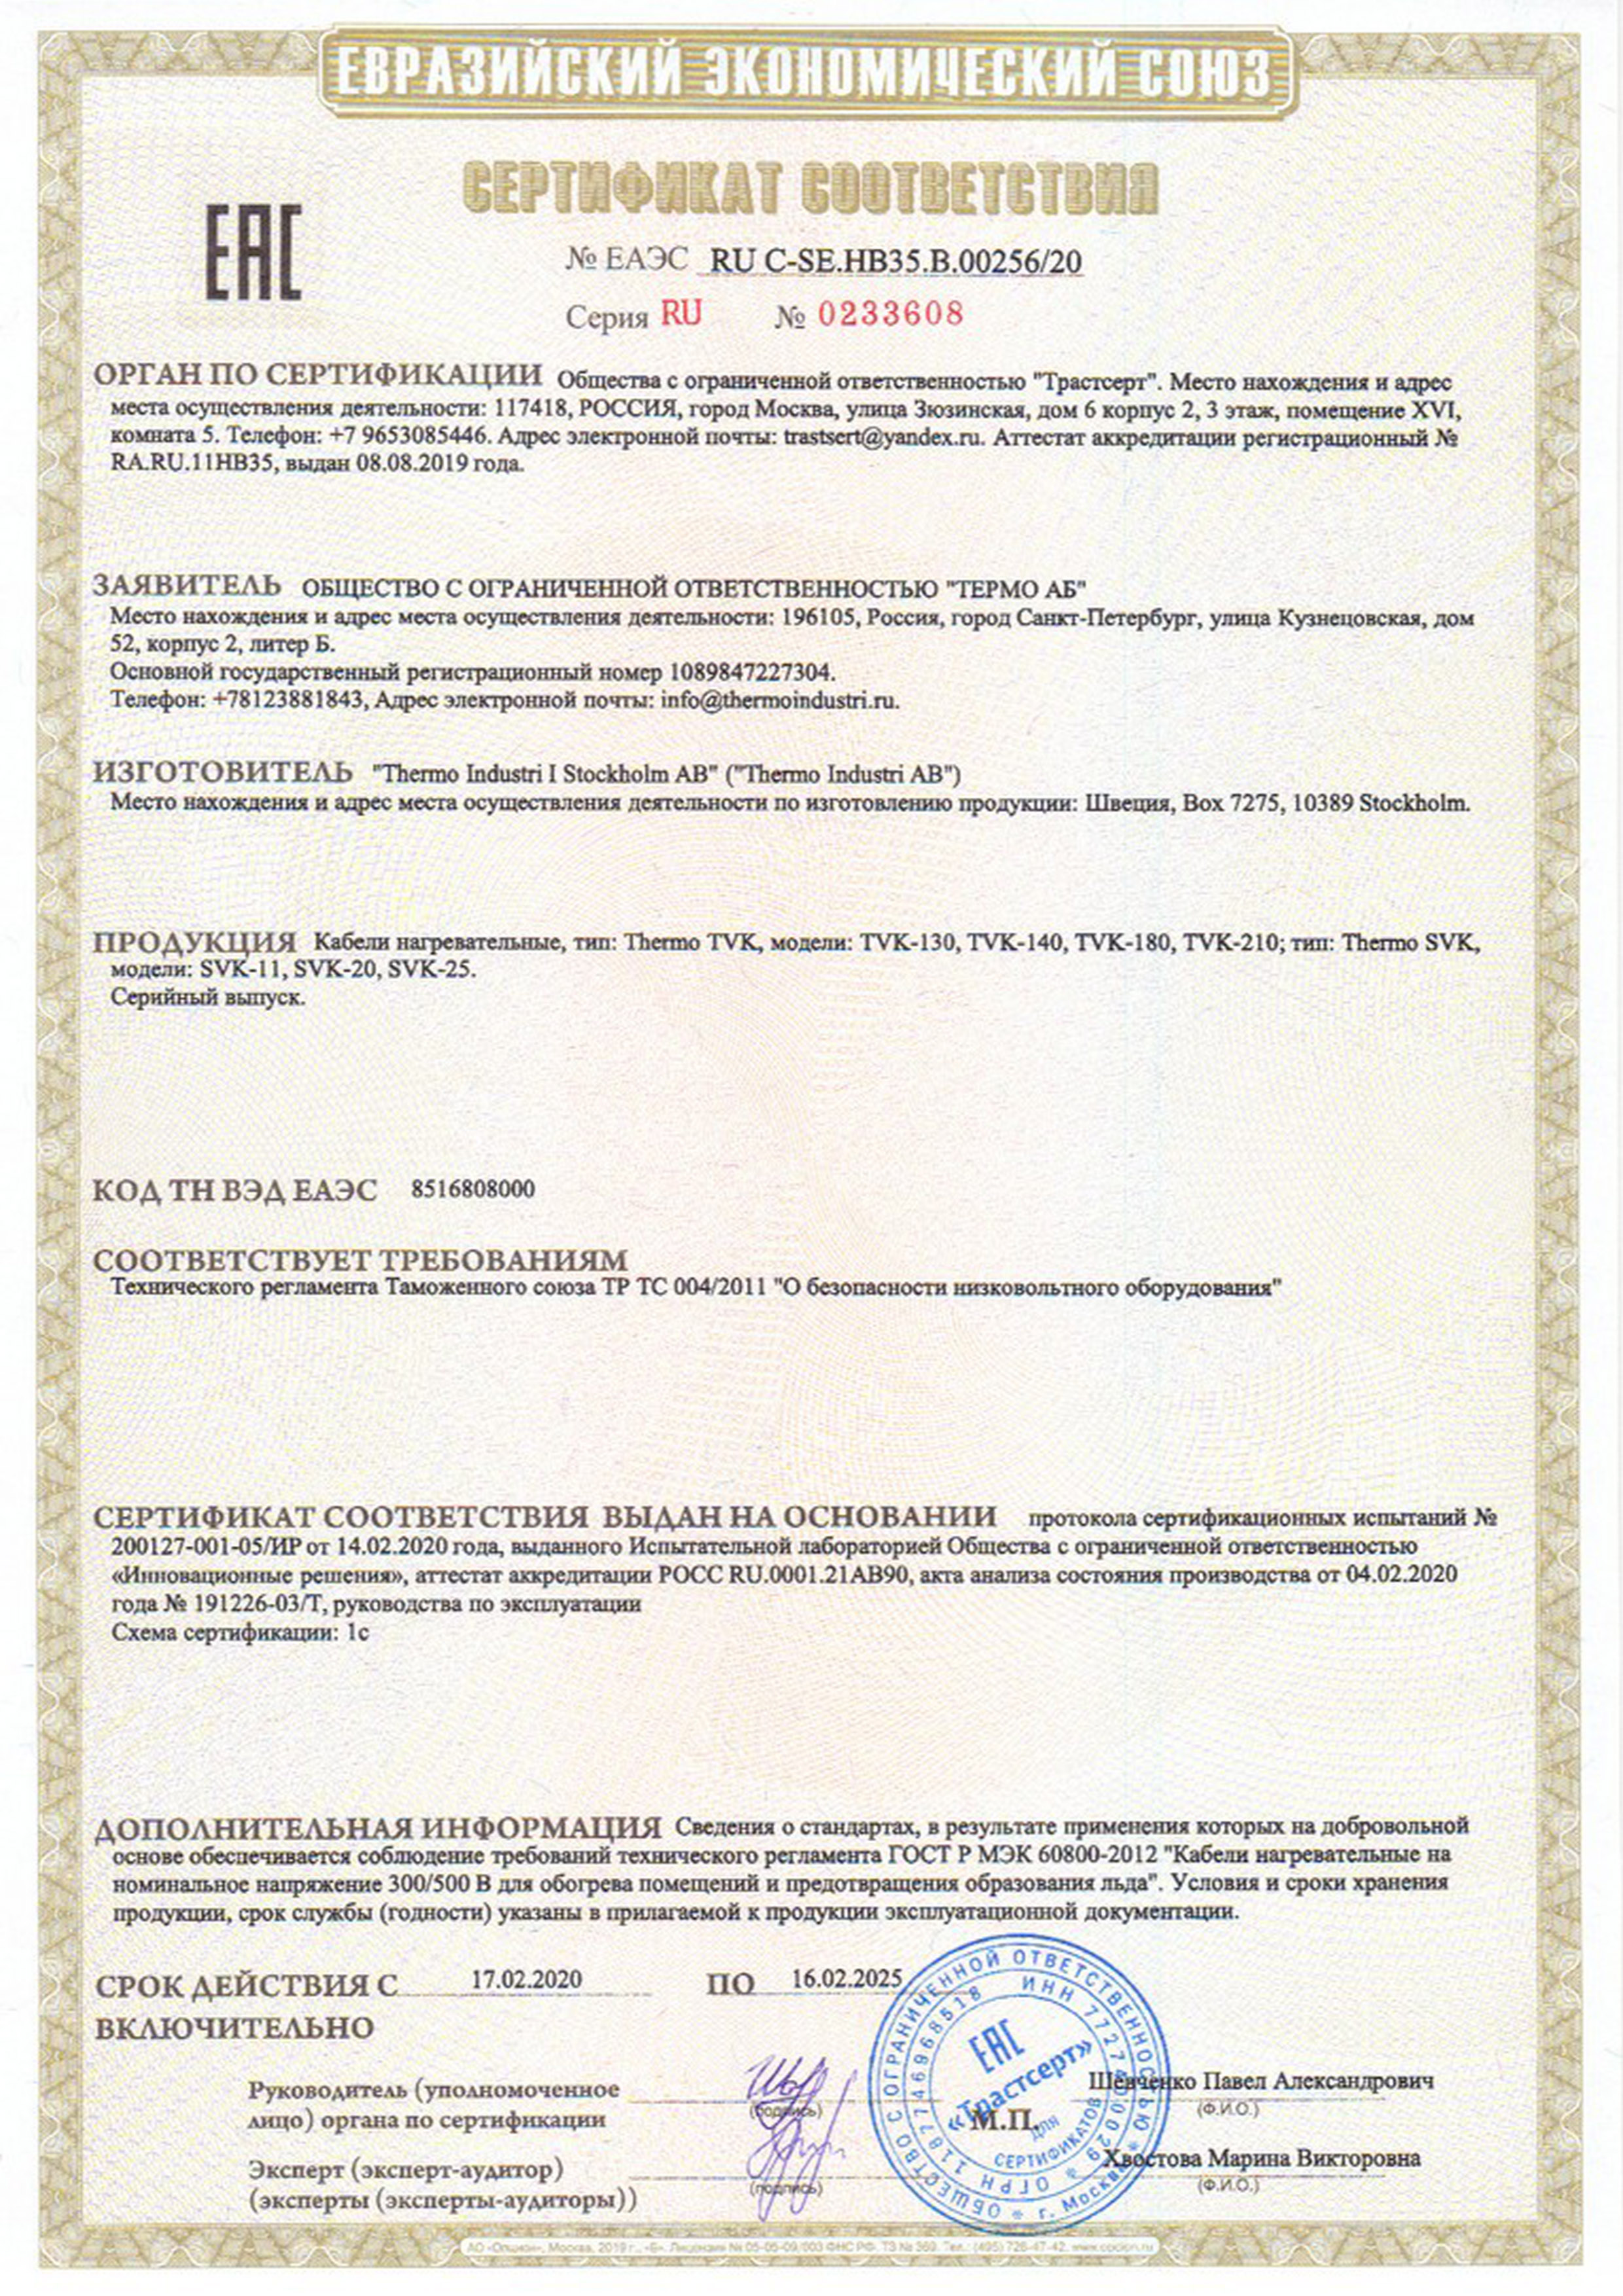 Сертификат соответствия TVK, SVK